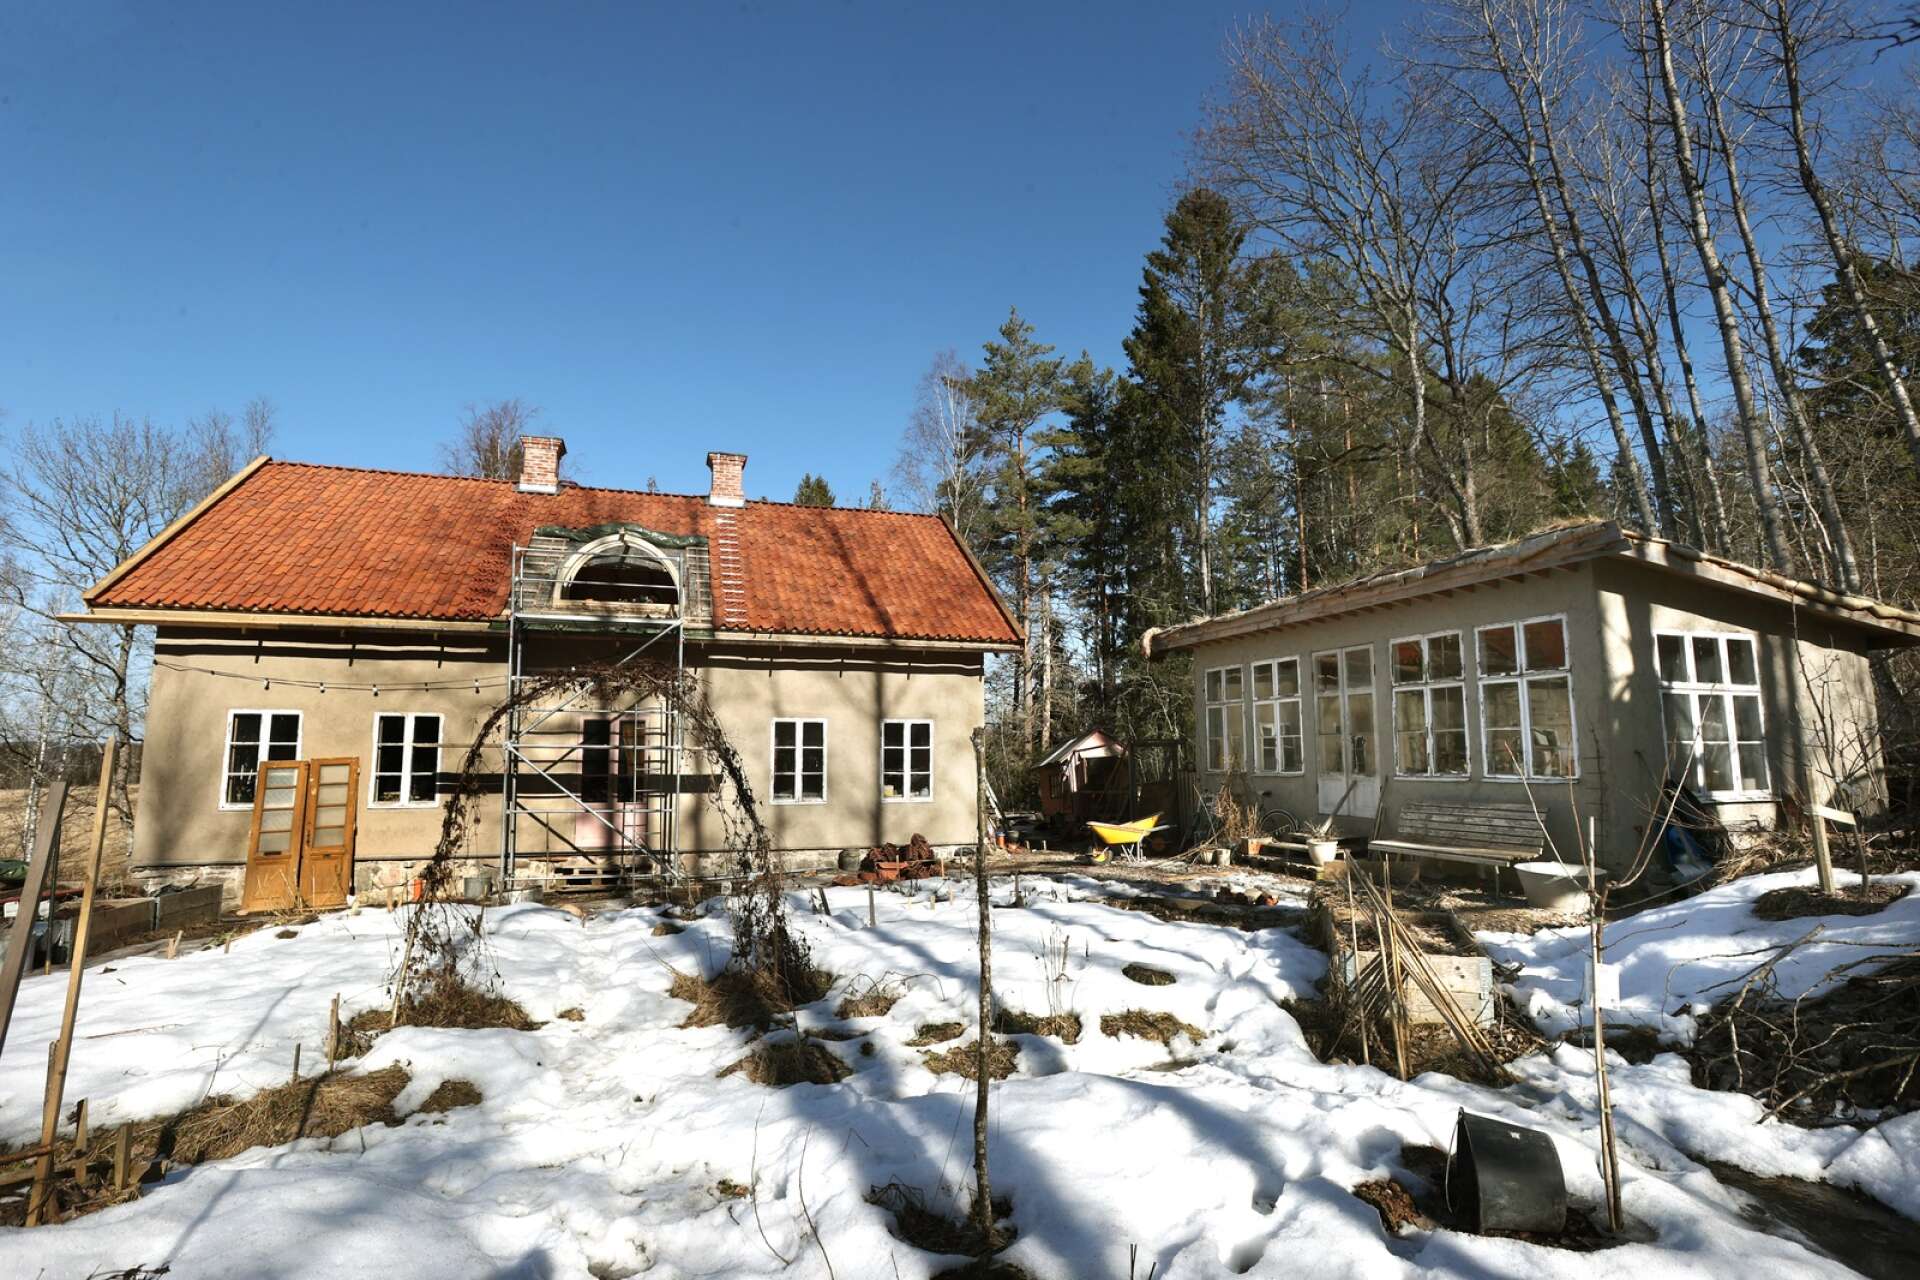 Dans la campagne, à quelques kilomètres de Karlstad, se trouve la maison nouvellement construite d'Emma et John, conçue pour ressembler à une vieille maison et construite avec à la fois innovation et tradition.